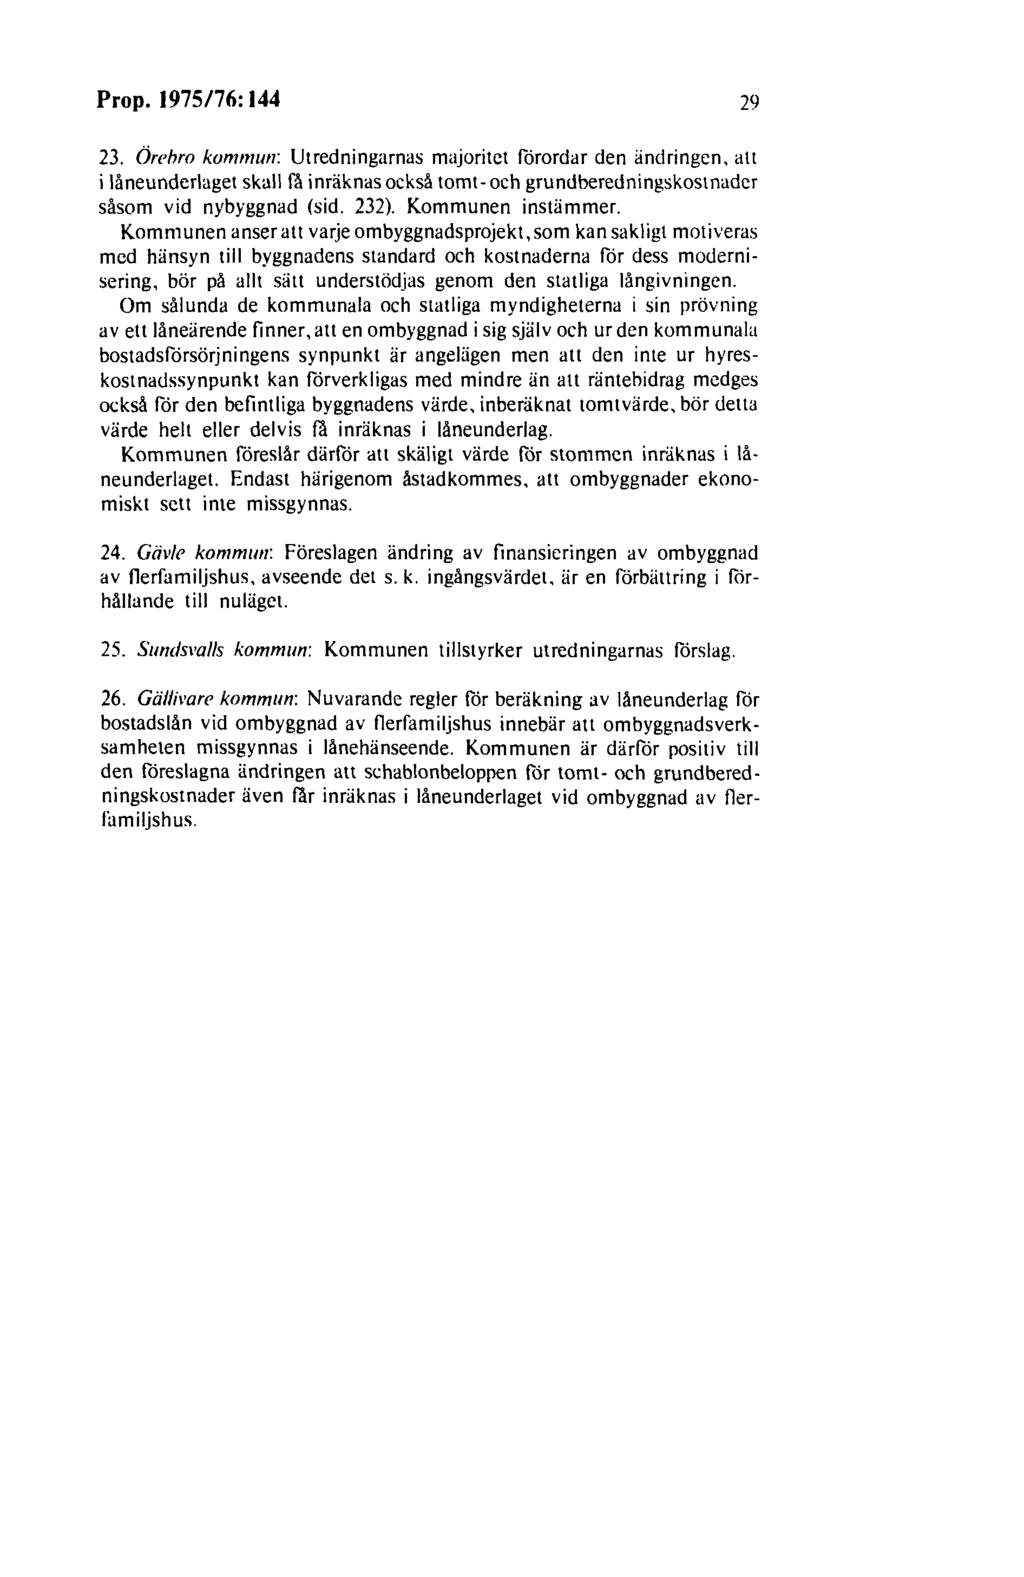 Prop. 1975/76:144 29 23. Örehro kommun: Utredningarnas majoritet förordar den ändringen, att i låneunderlaget skall få inräknas också tomt- och grundberedningskostnader såsom vid nybyggnad (sid. 232).